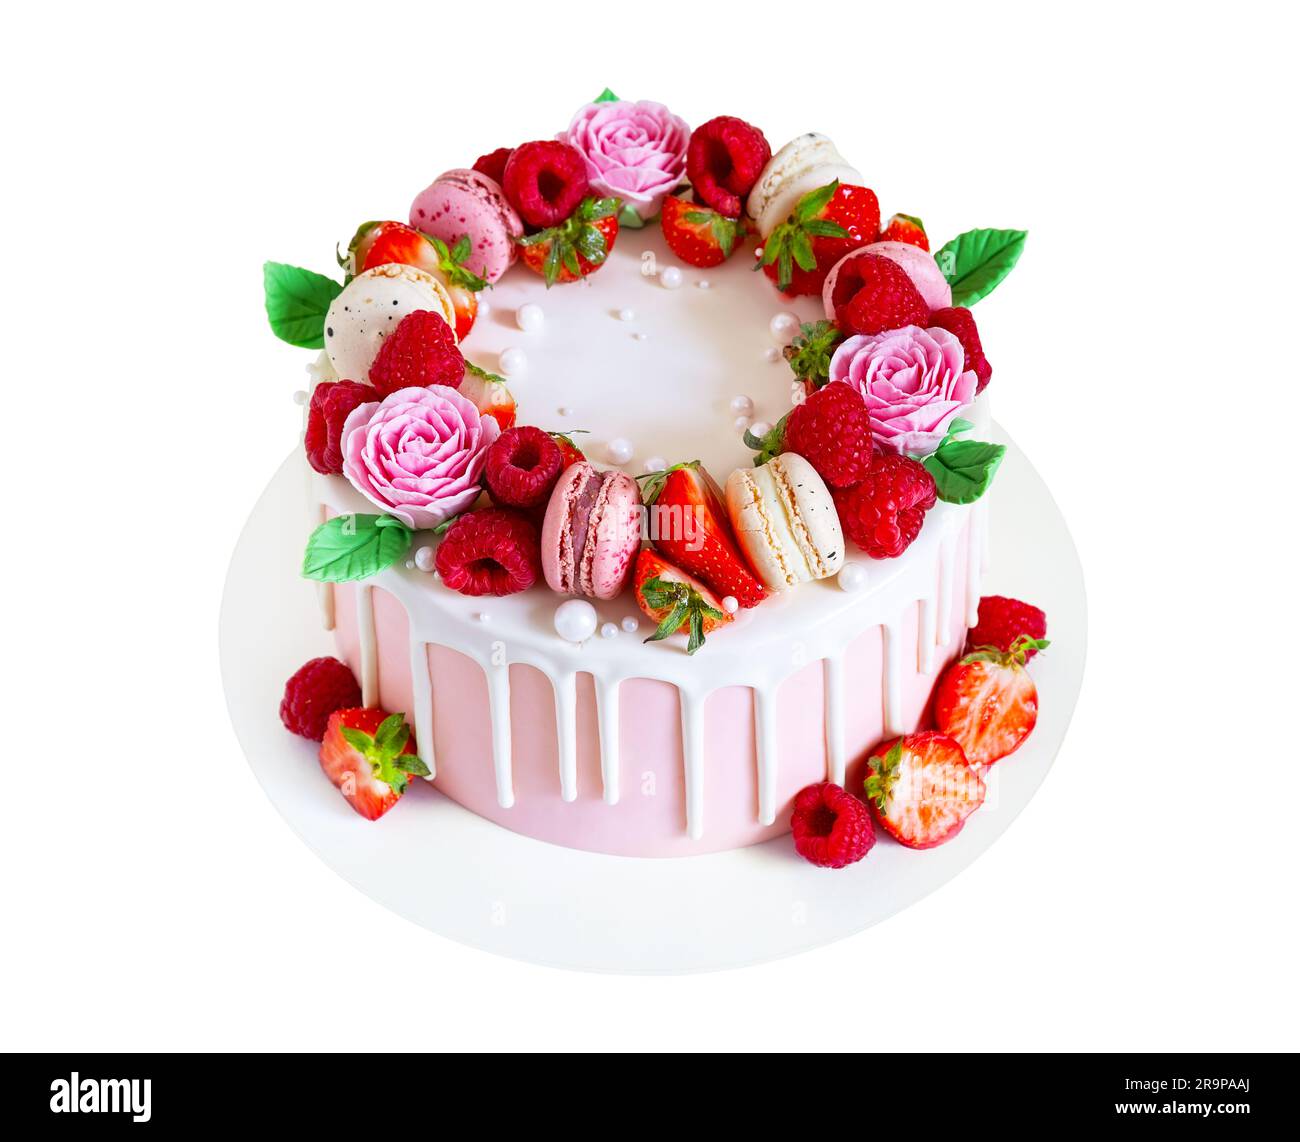 Dolce di compleanno con frutti di bosco, macaron e decorazioni floreali  isolate su sfondo bianco. Bella torta rosa decorata con macaron, lamponi, s  Foto stock - Alamy